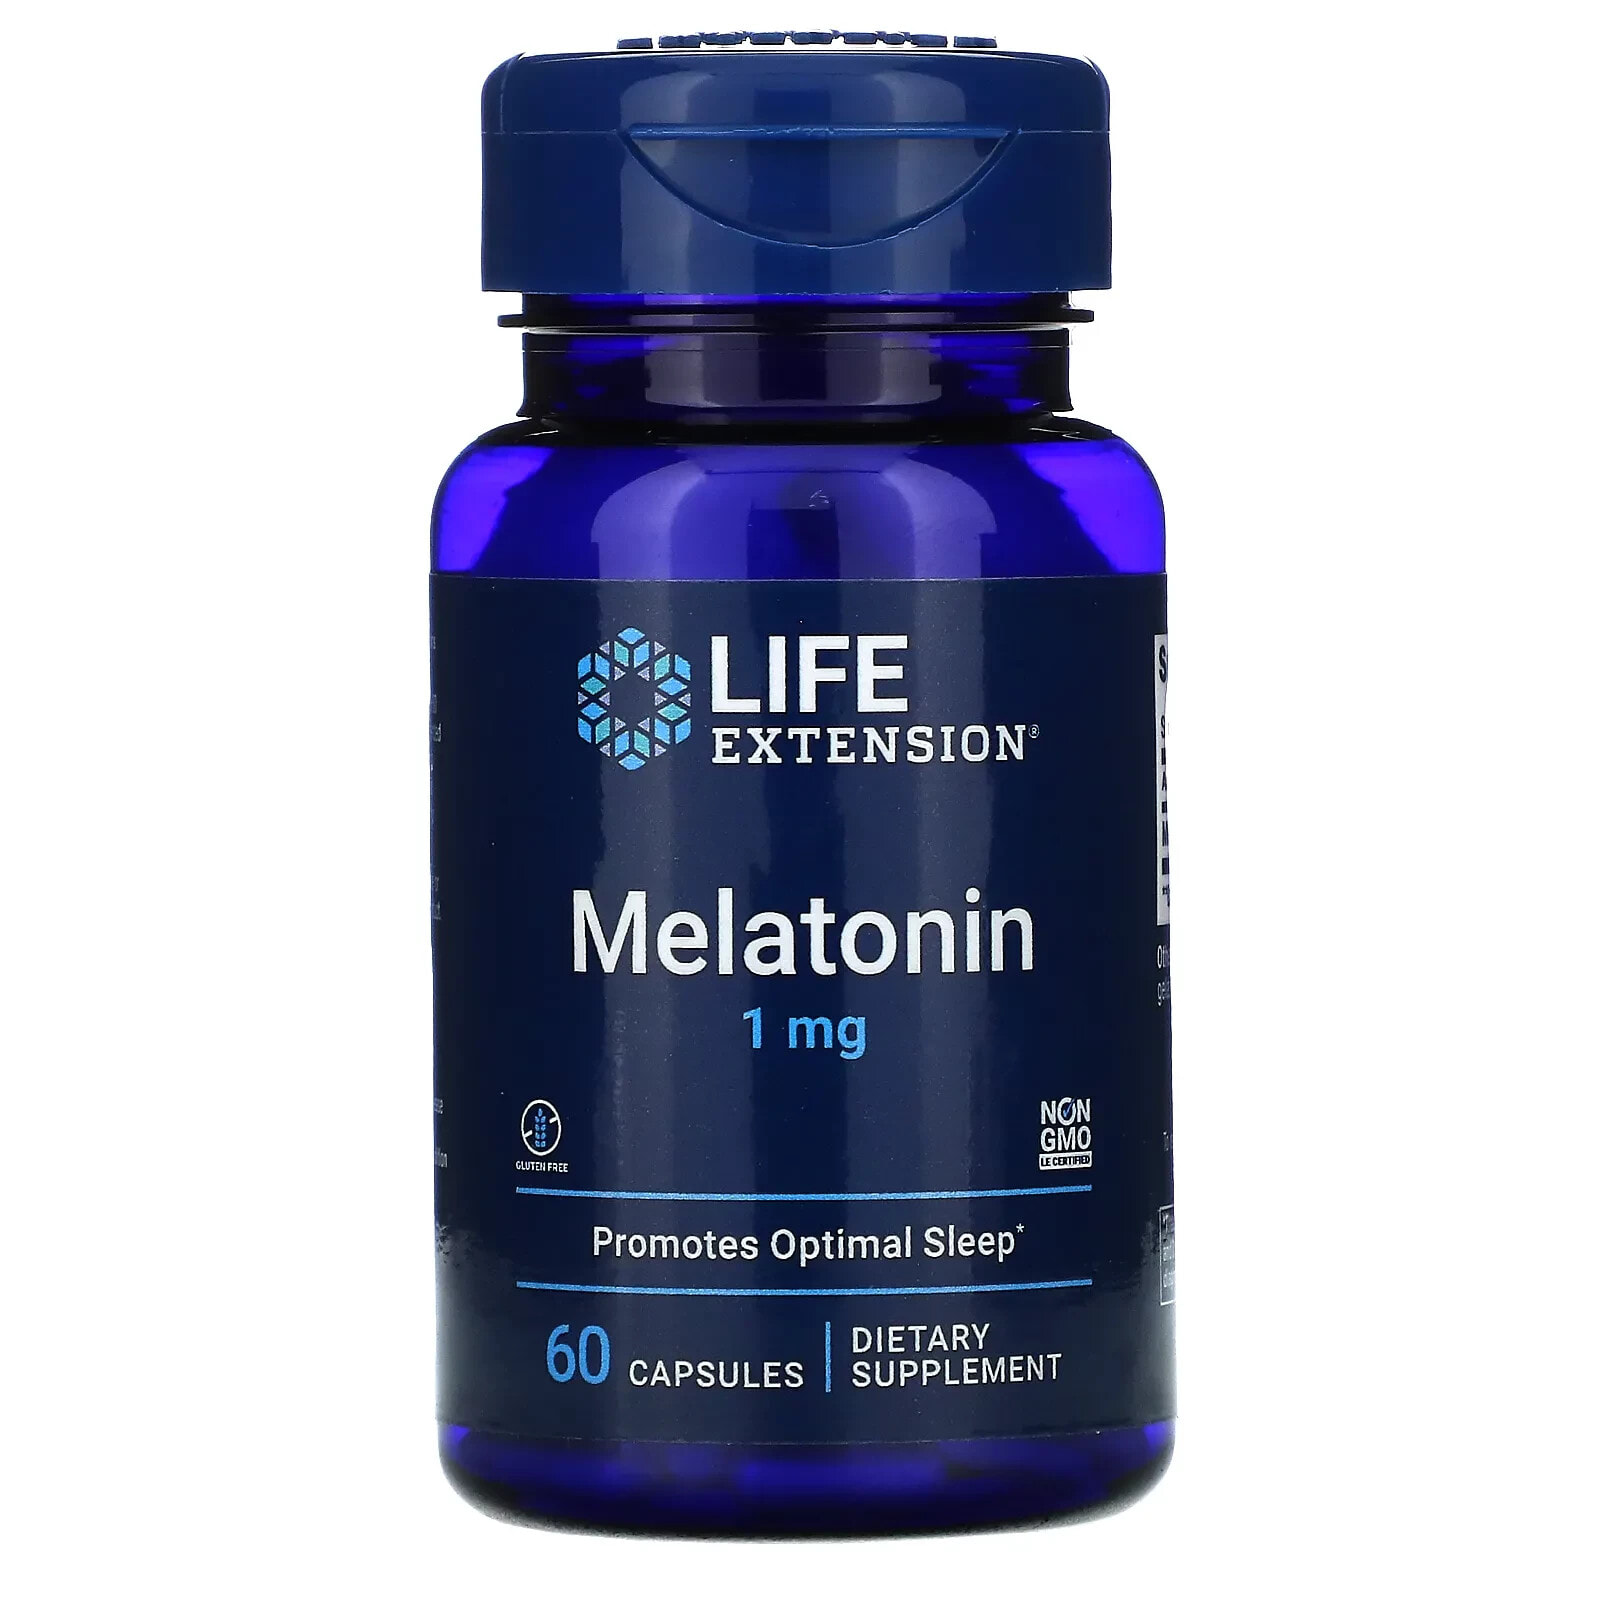 Melatonin, 10 mg, 60 Vegetarian Capsules